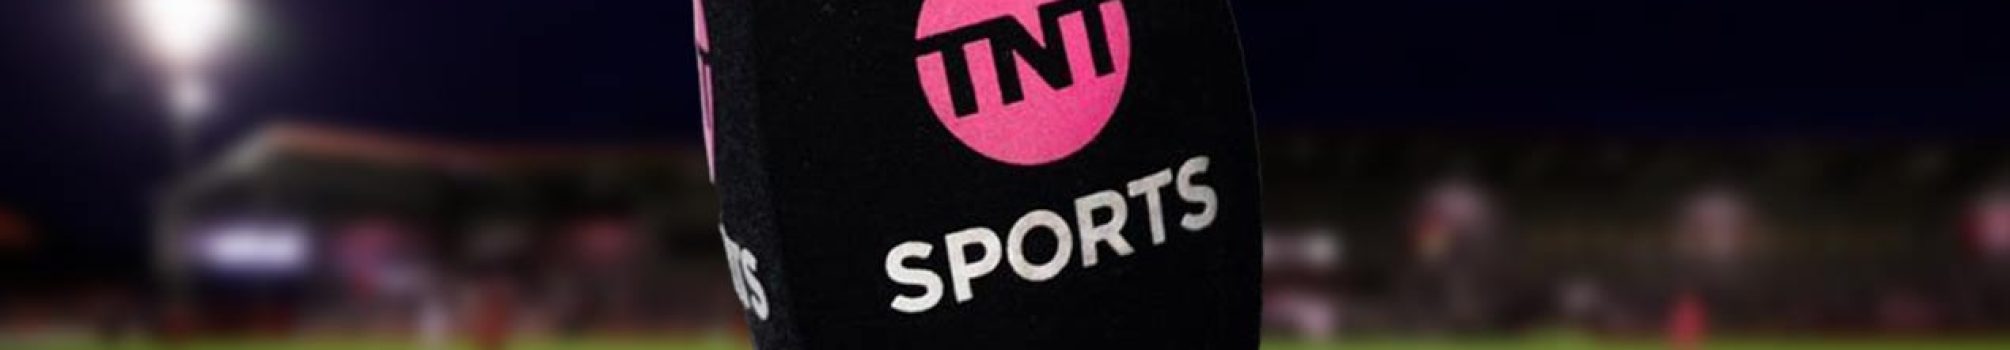 TNT-sports